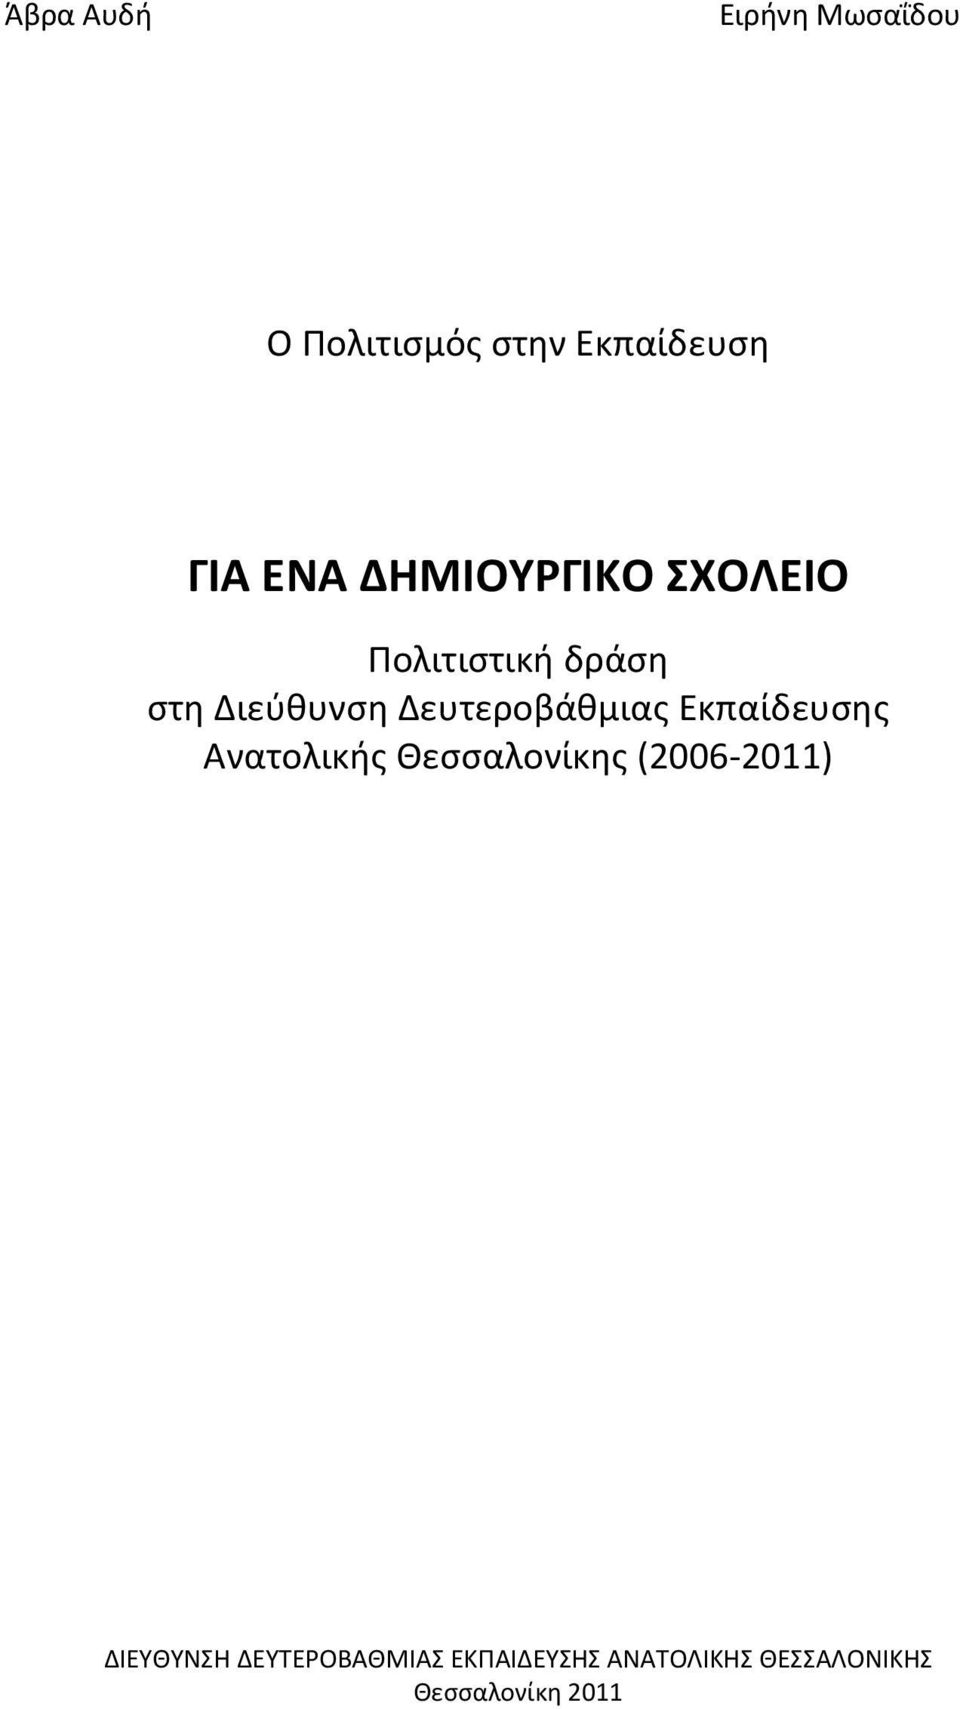 Δευτεροβάθμιας Εκπαίδευσης Ανατολικής Θεσσαλονίκης (2006-2011)